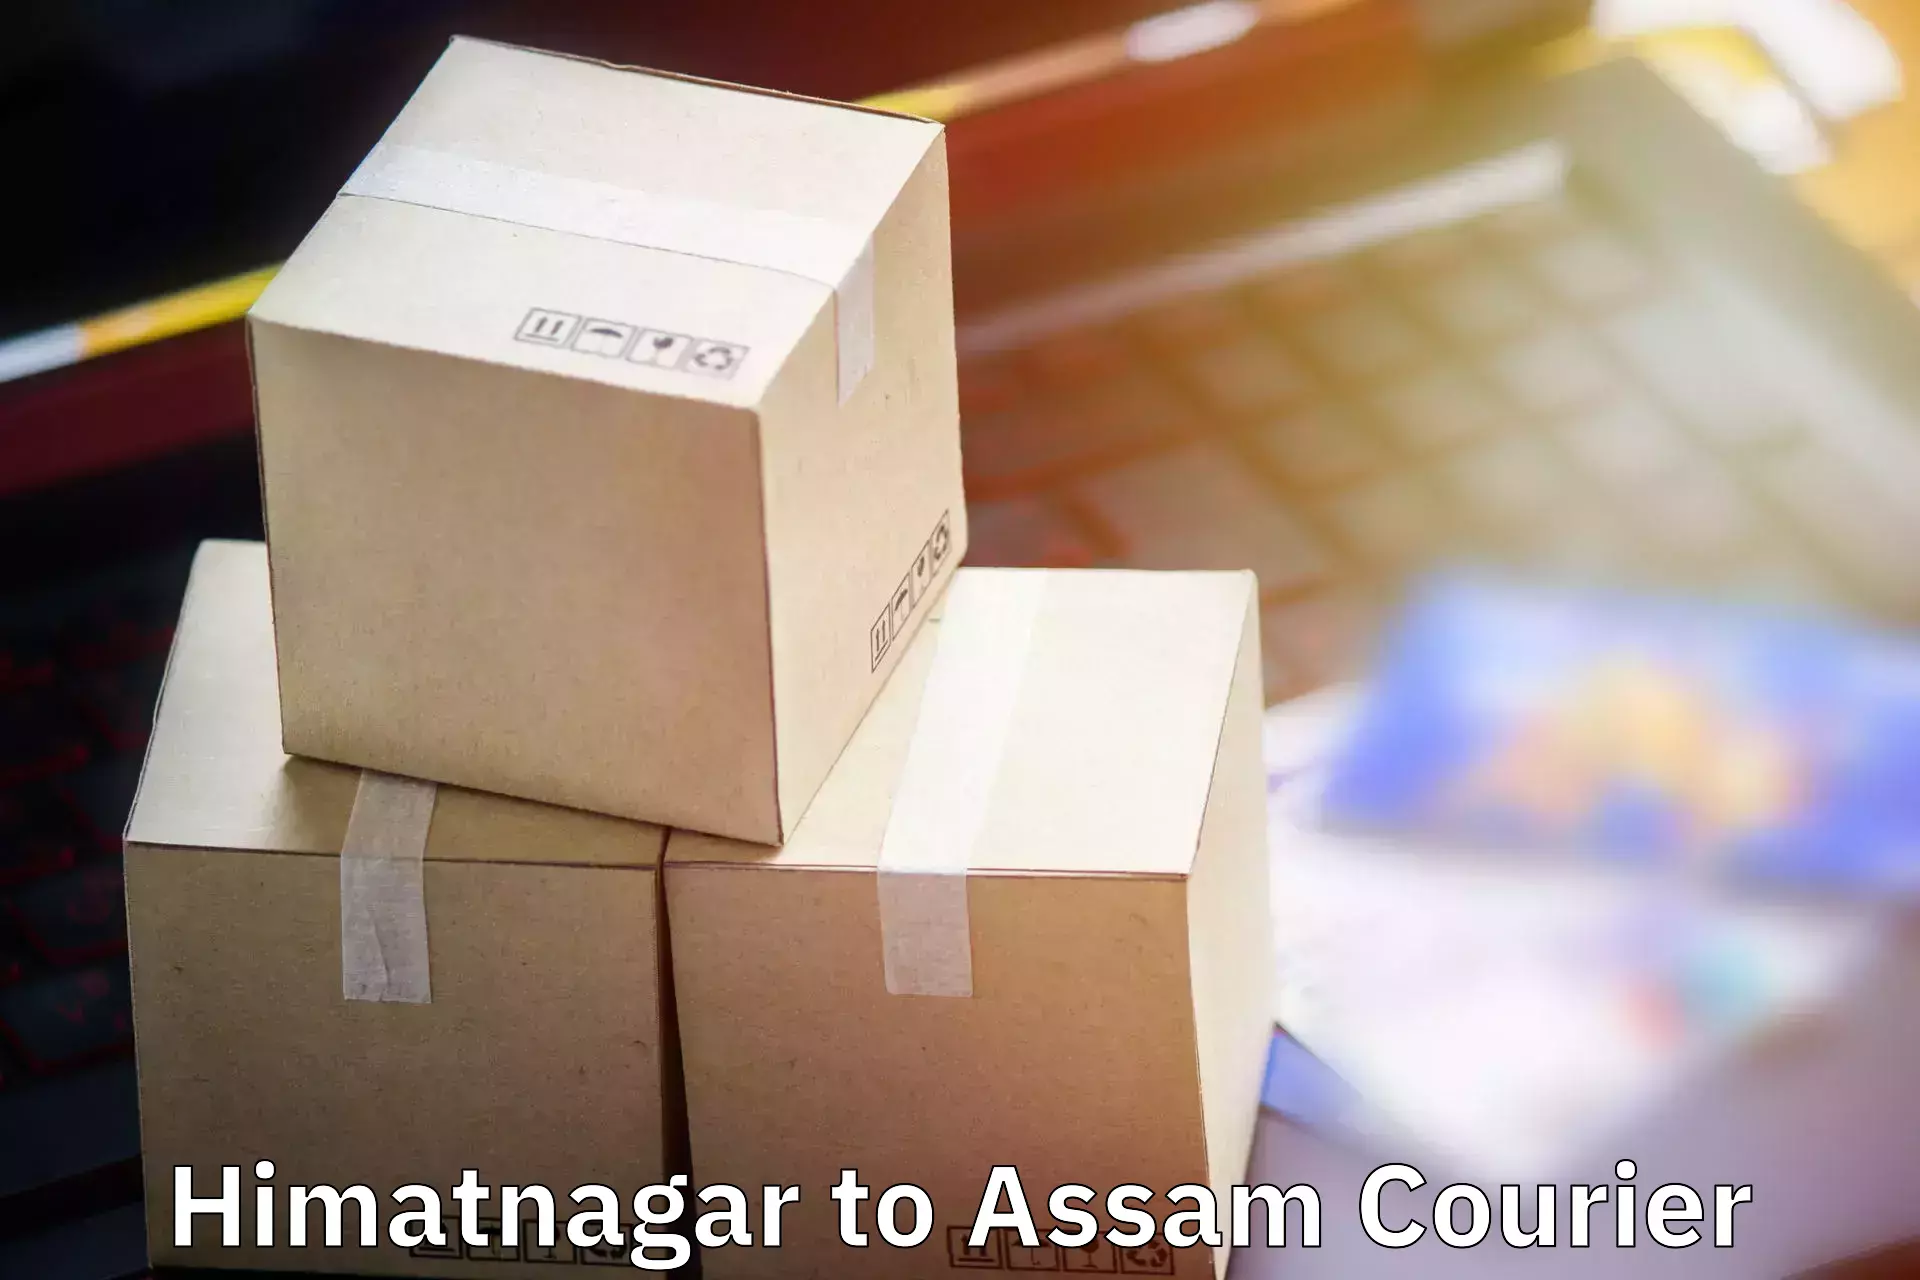 Luggage dispatch service Himatnagar to Dhupdhara